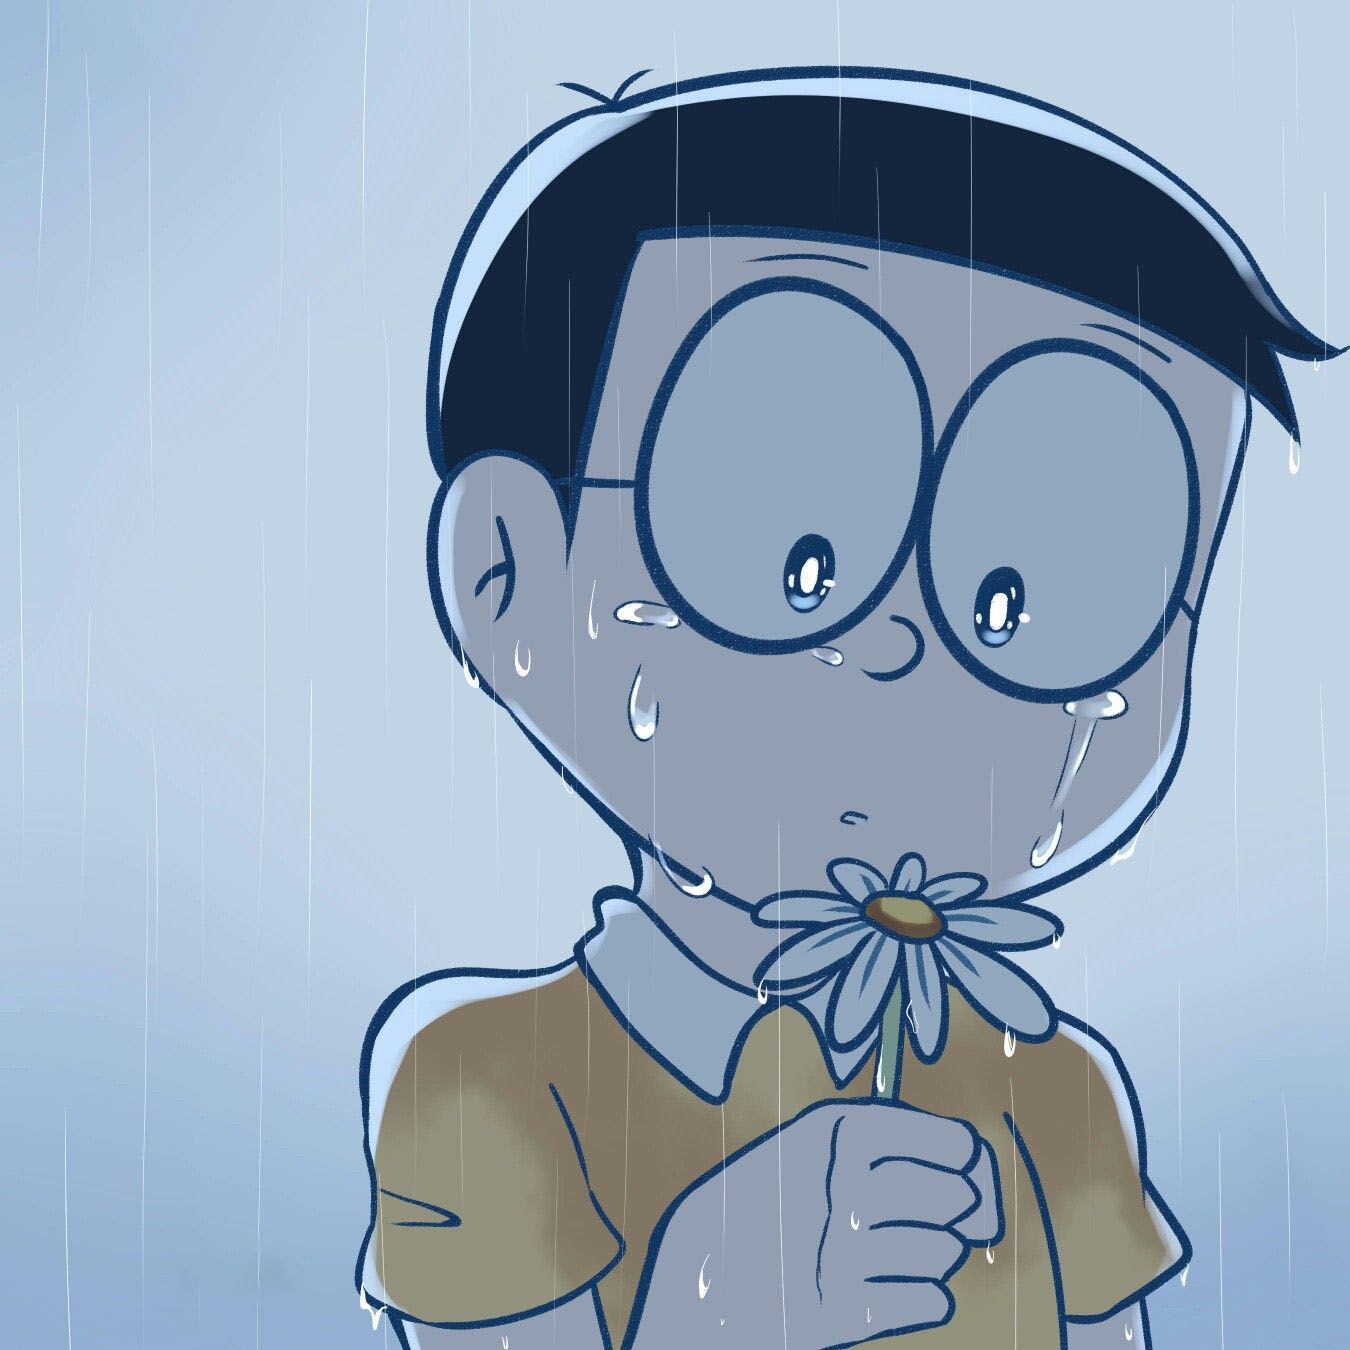 Nobita - cậu bé dũng cảm và lạc quan trong truyện Doraemon luôn thu hút sự chú ý của đông đảo bạn đọc. Các bạn có muốn xem hình ảnh về những cuộc phiêu lưu của Nobita không? Hãy bấm vào đây và tận hưởng bức ảnh đầy cảm xúc này nhé!